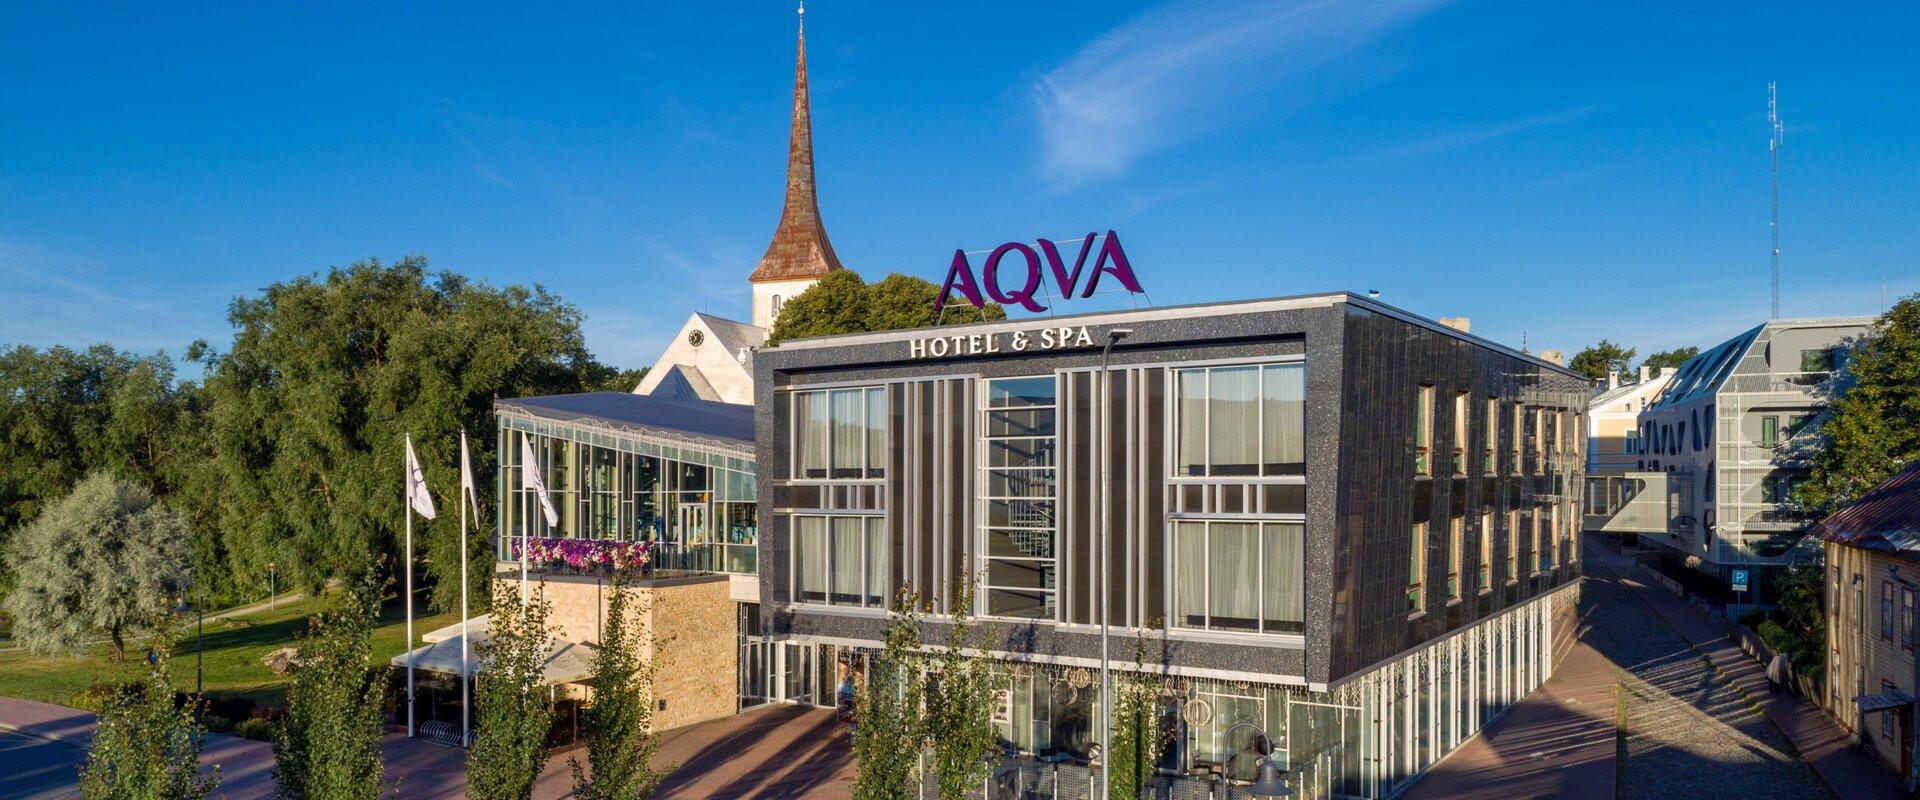 AQVA Hotel & Spa